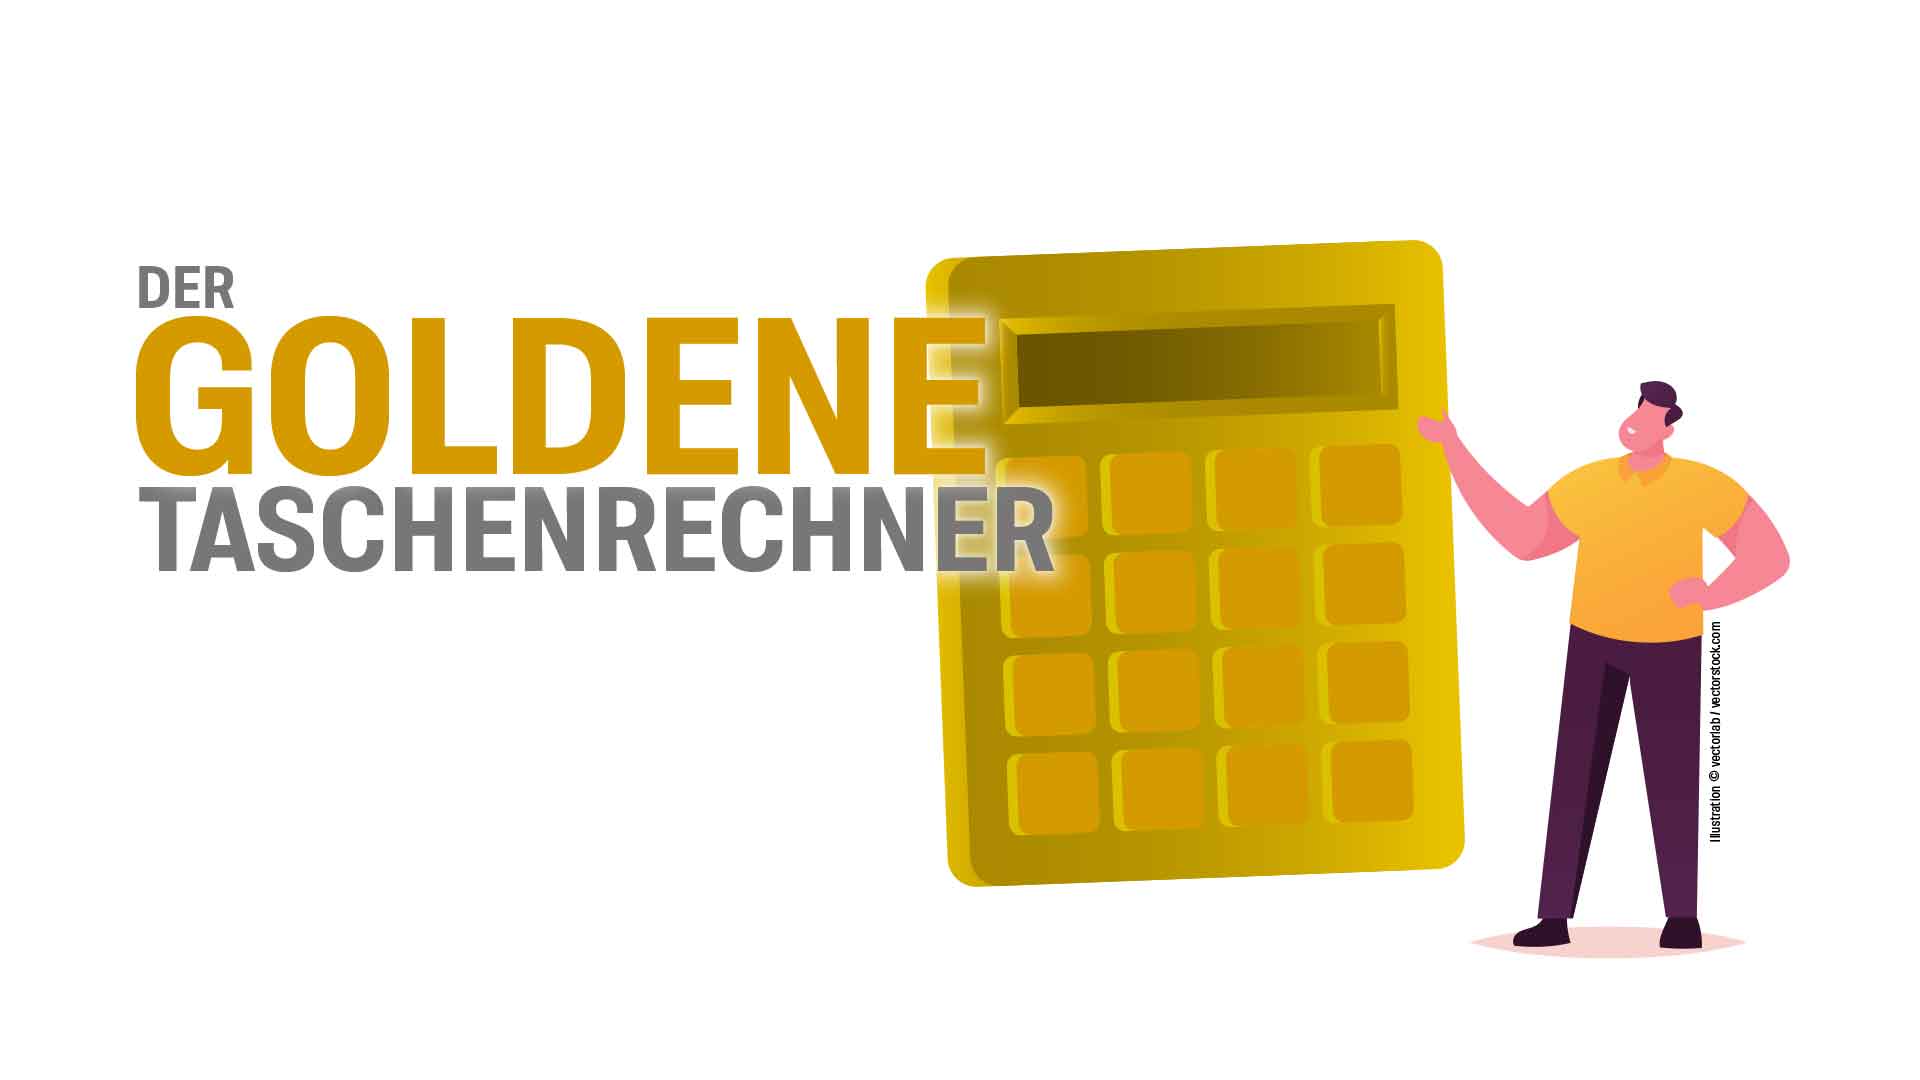 Award "Der goldene Taschenrechner"